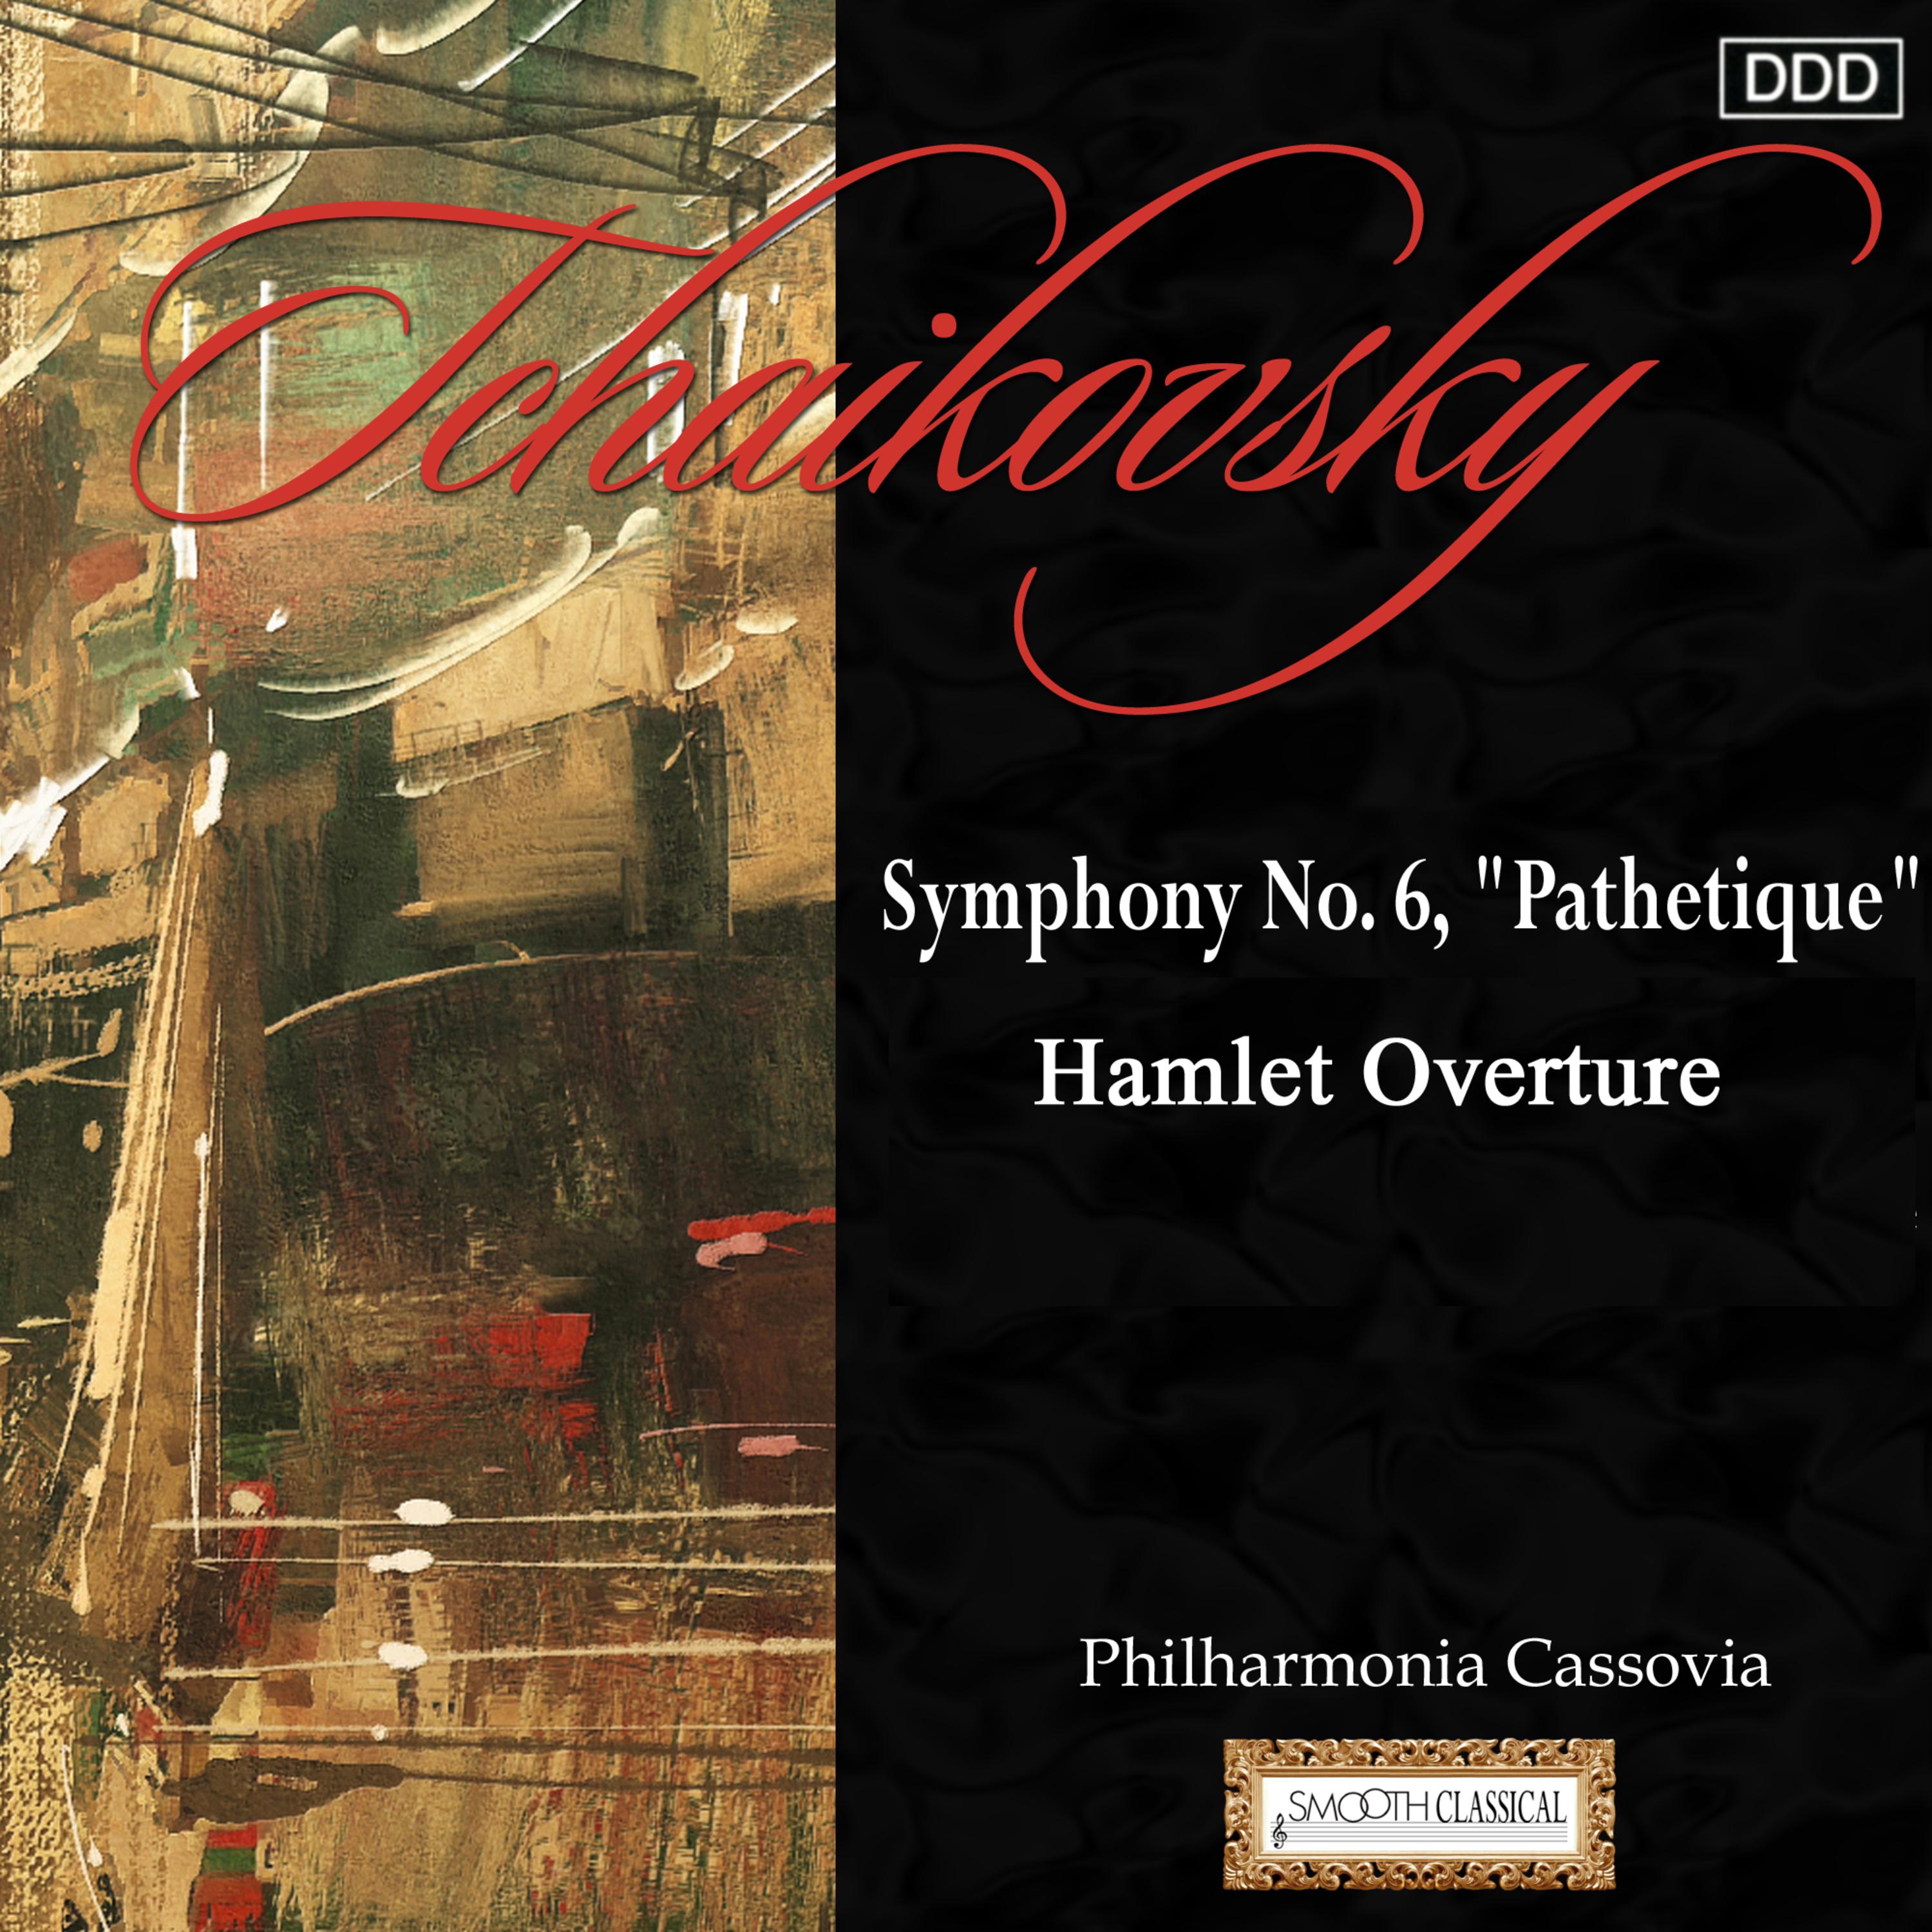 Symphony No. 6 in B Minor, Op. 74, TH 30 "Pathétique": I. Adagio - Allegro non troppo